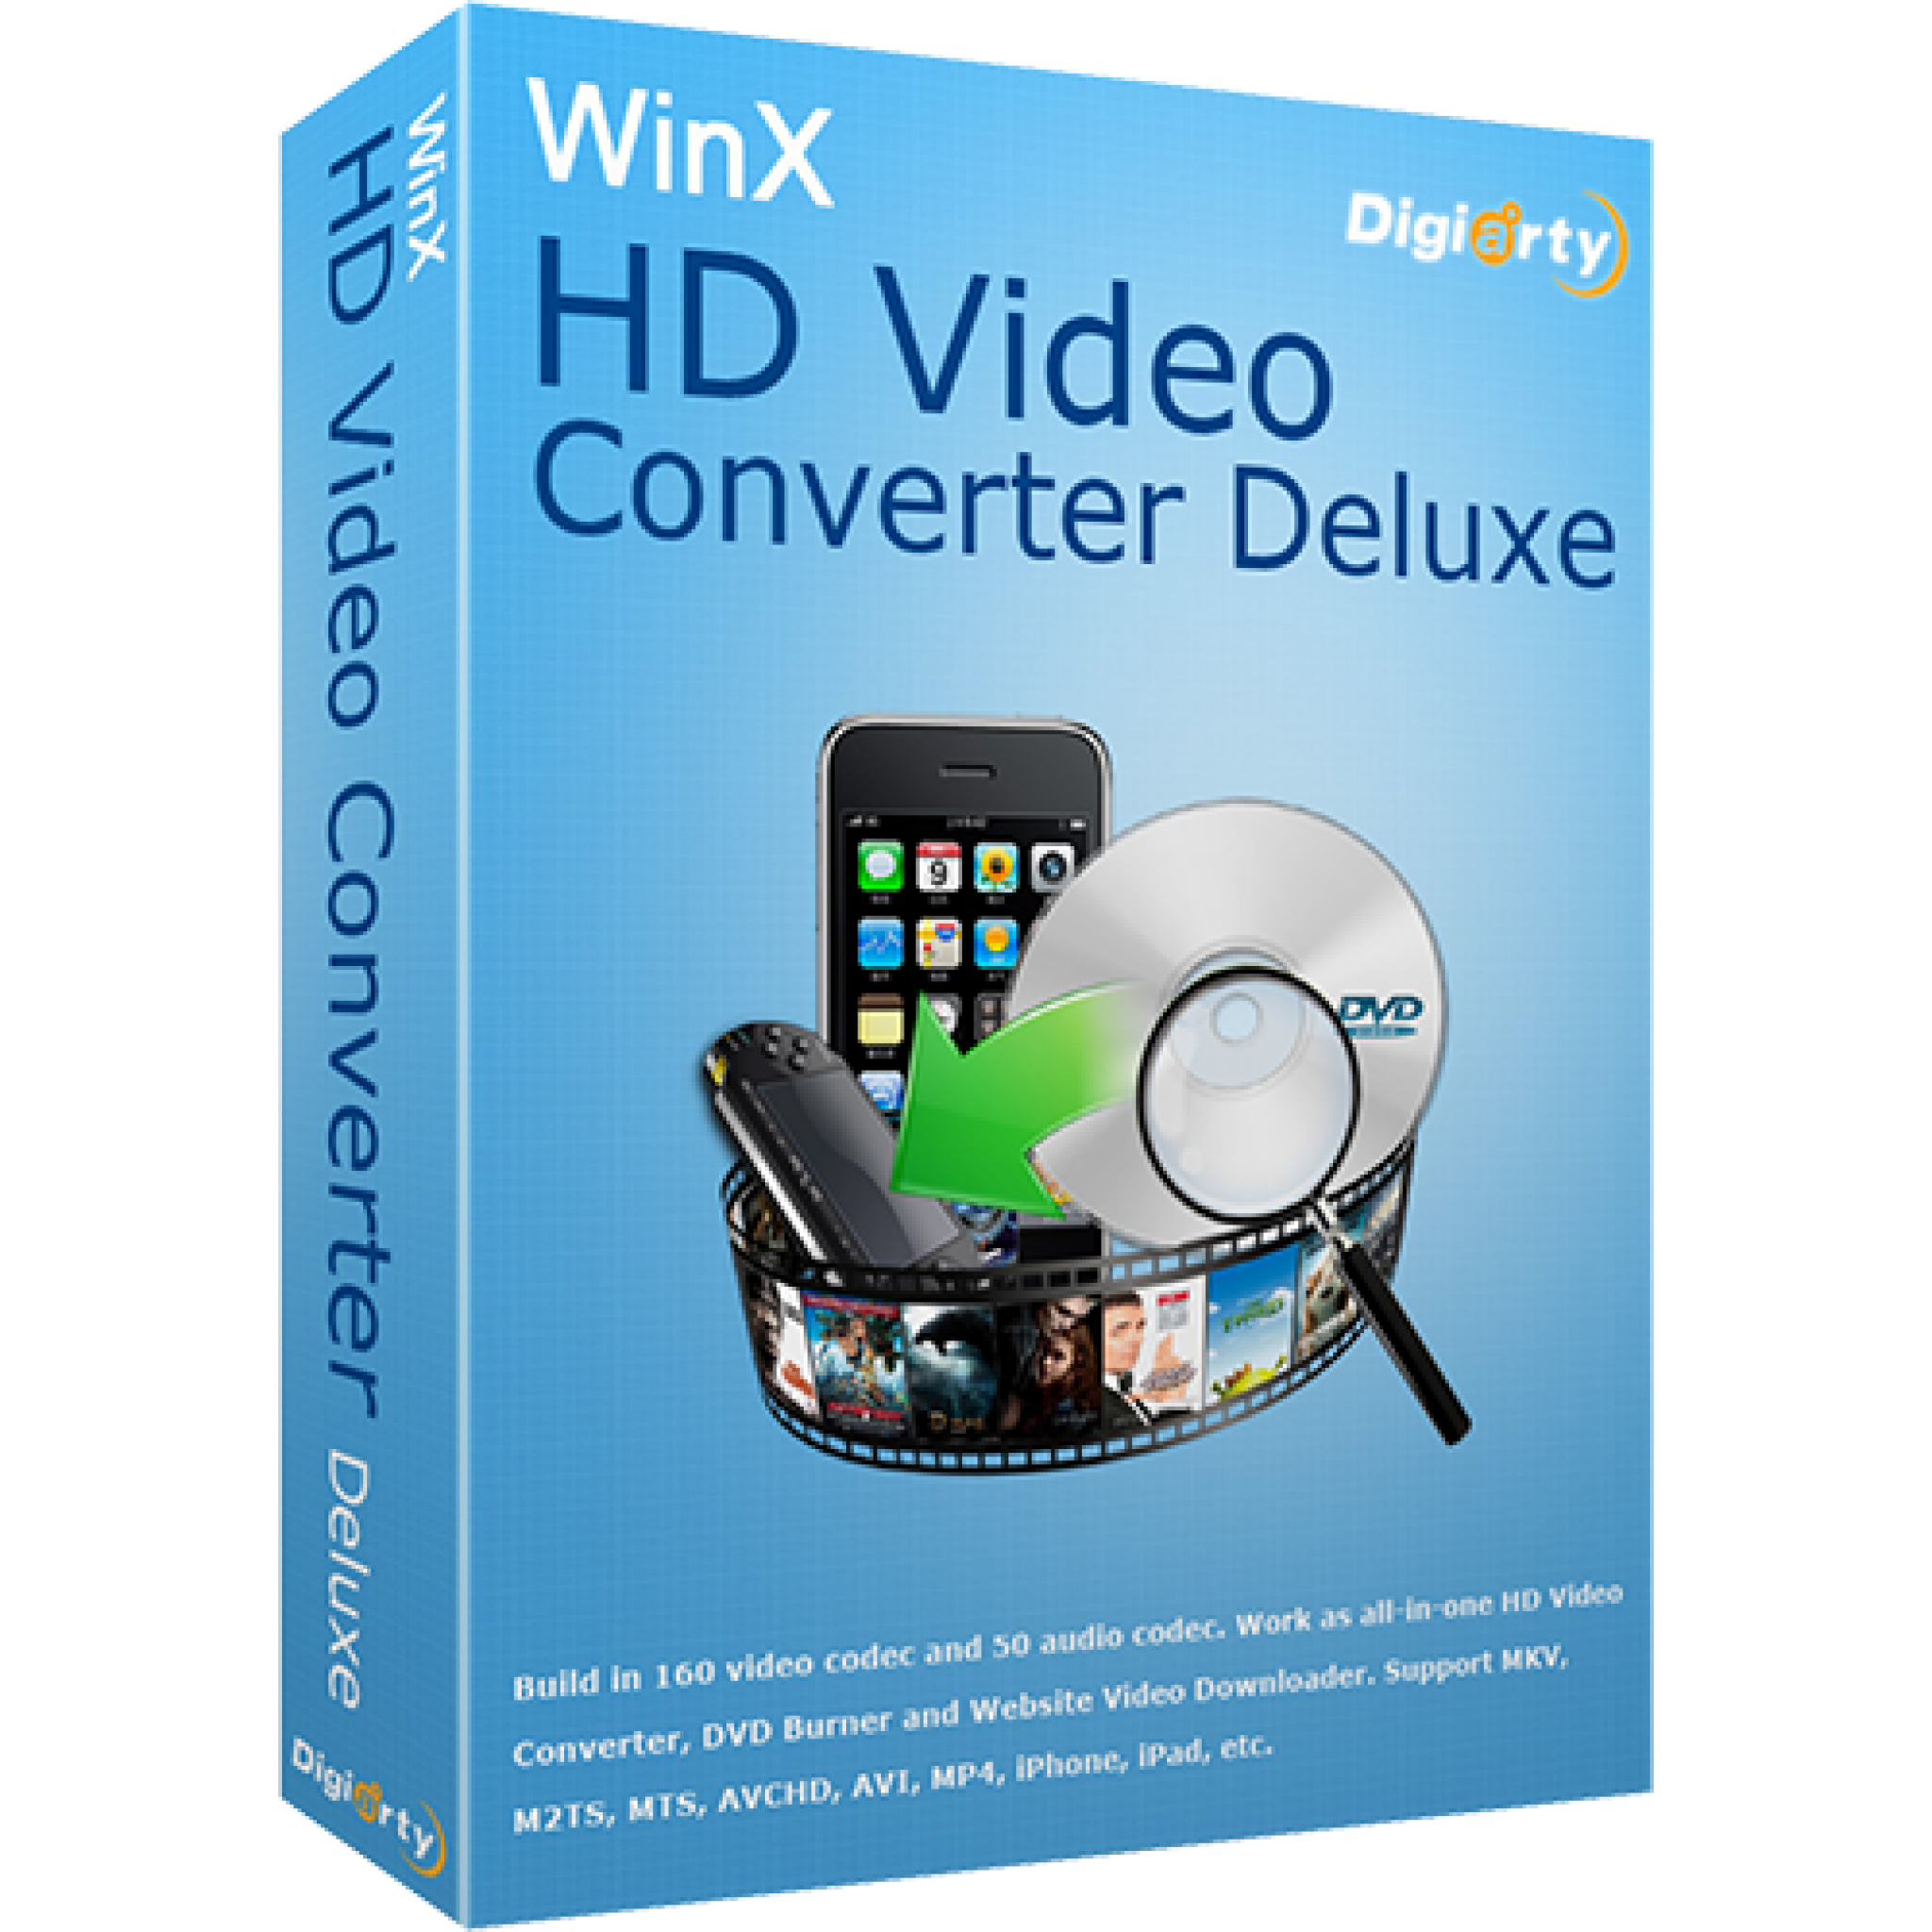 winx hd video converter 5.9.3 mac torrent download